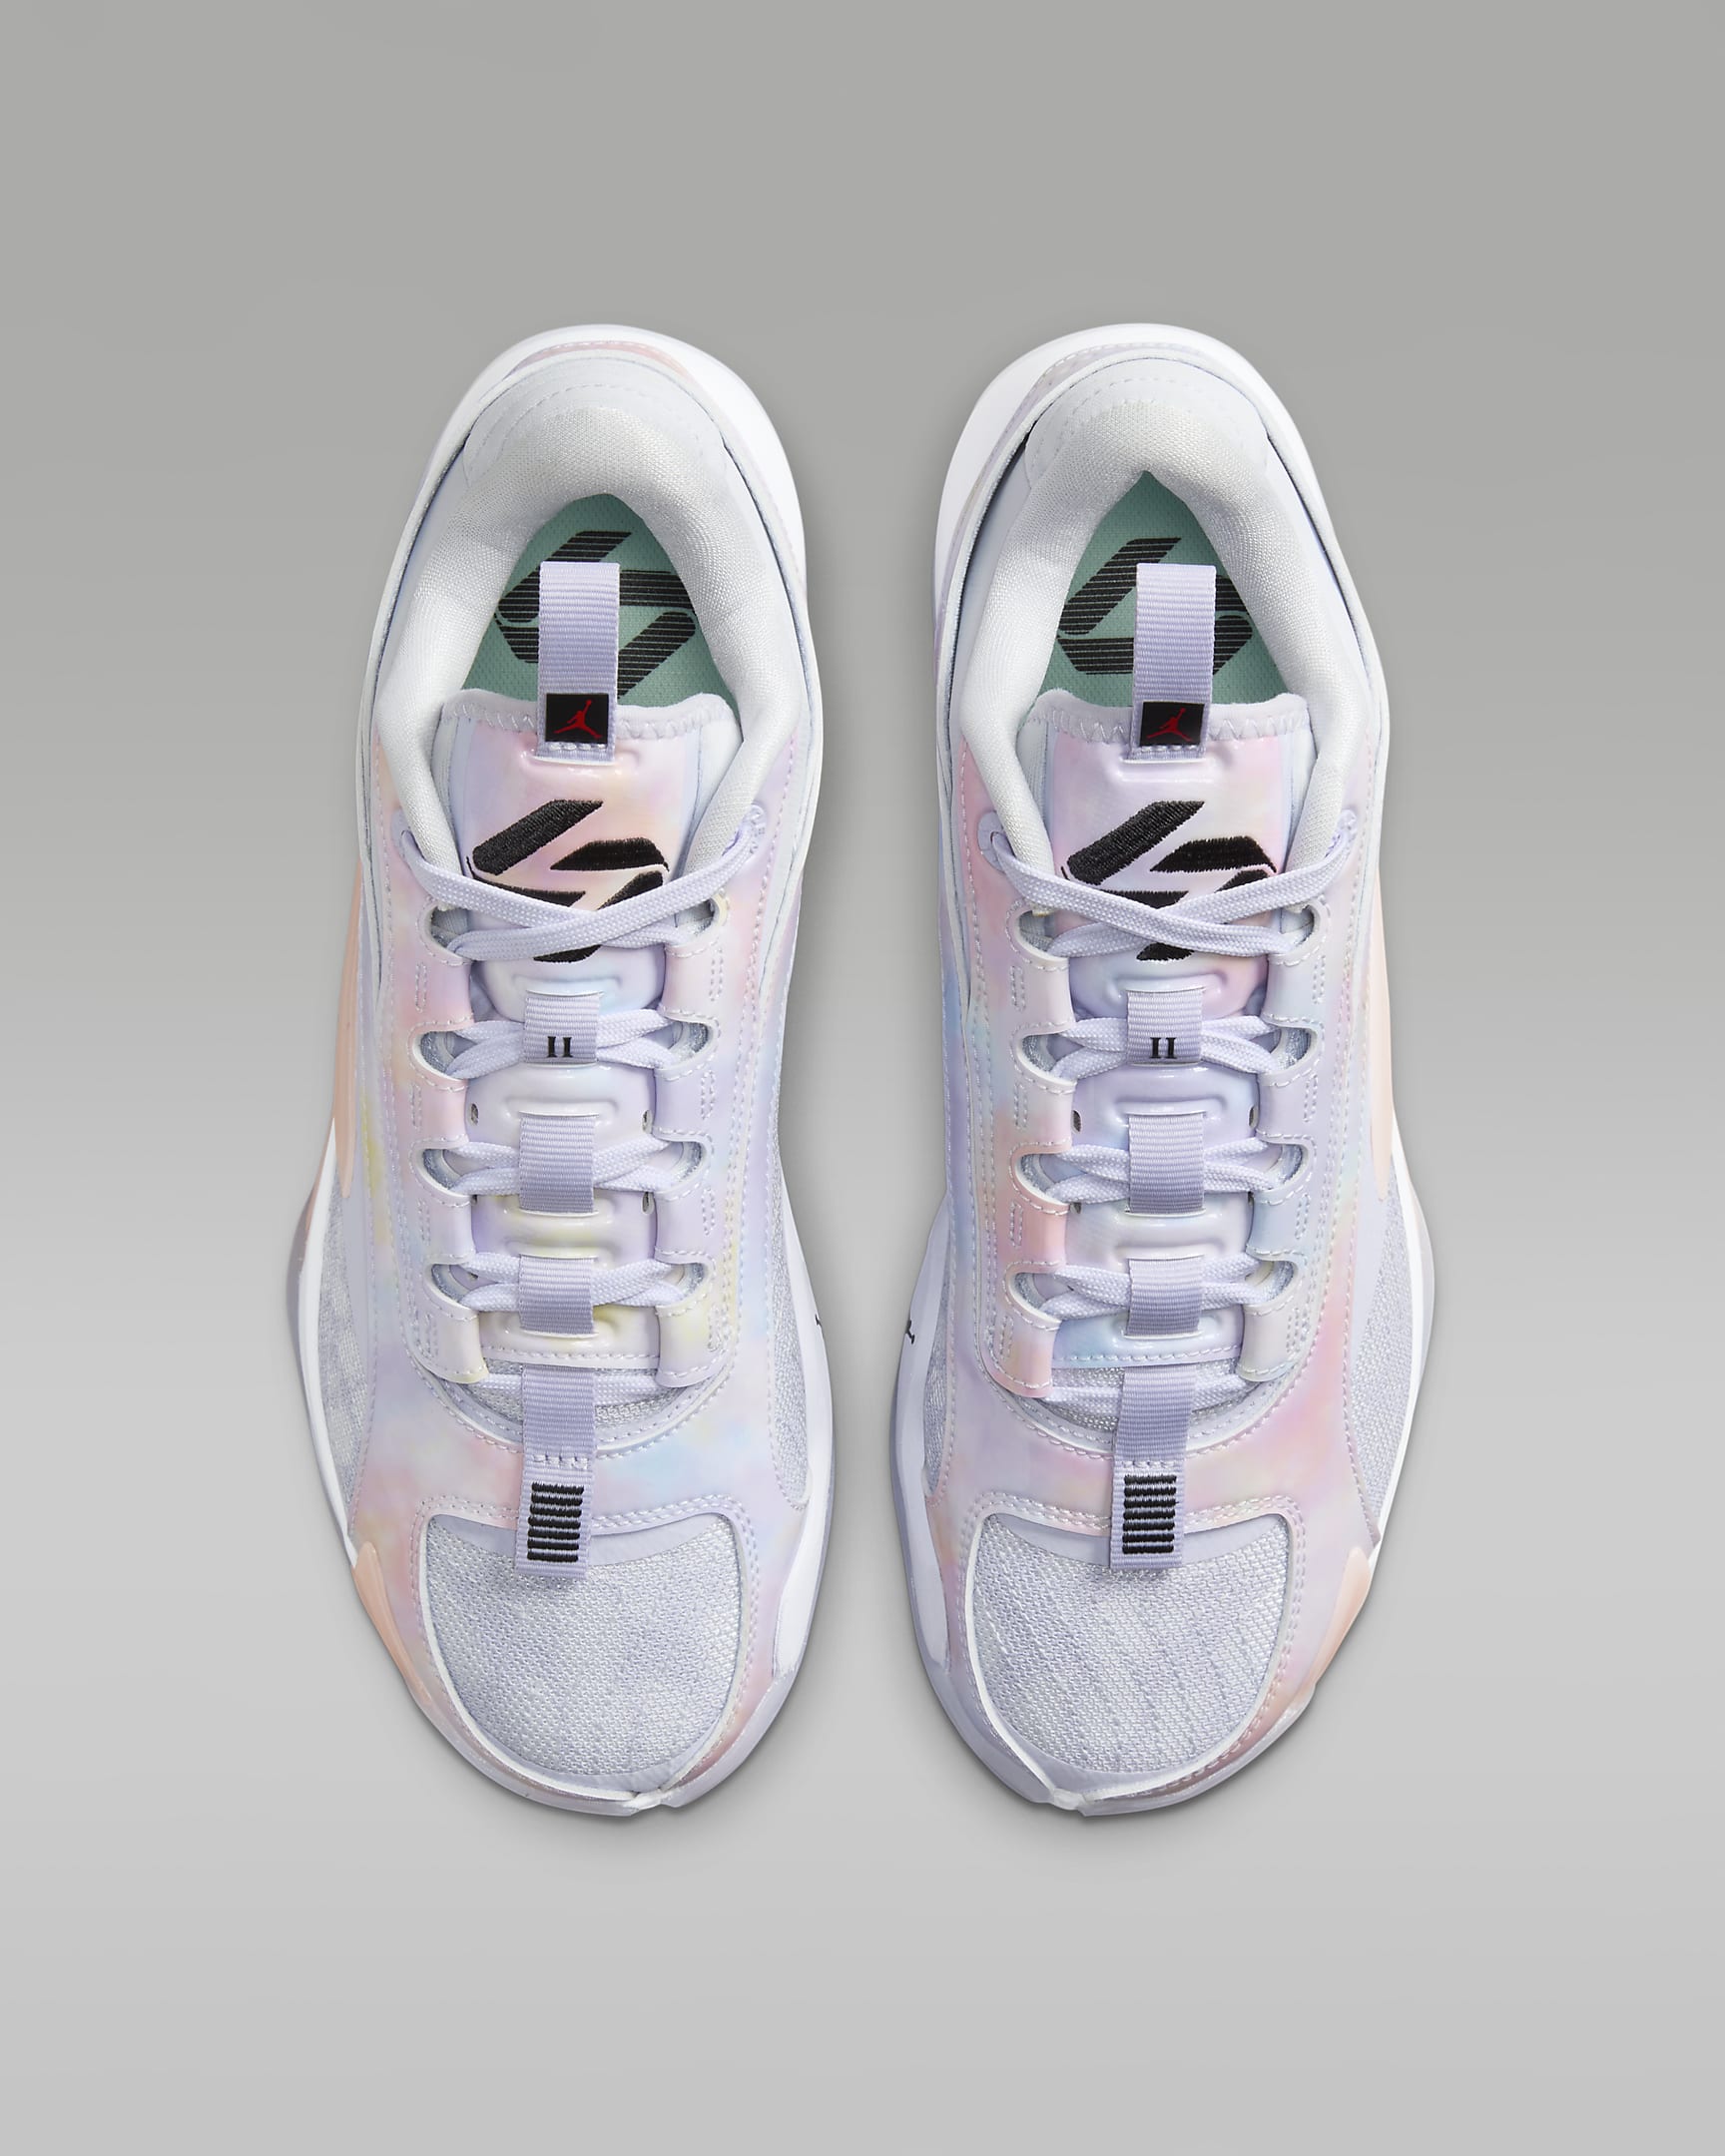 Luka 2 'Nebula' Basketball Shoes. Nike DK